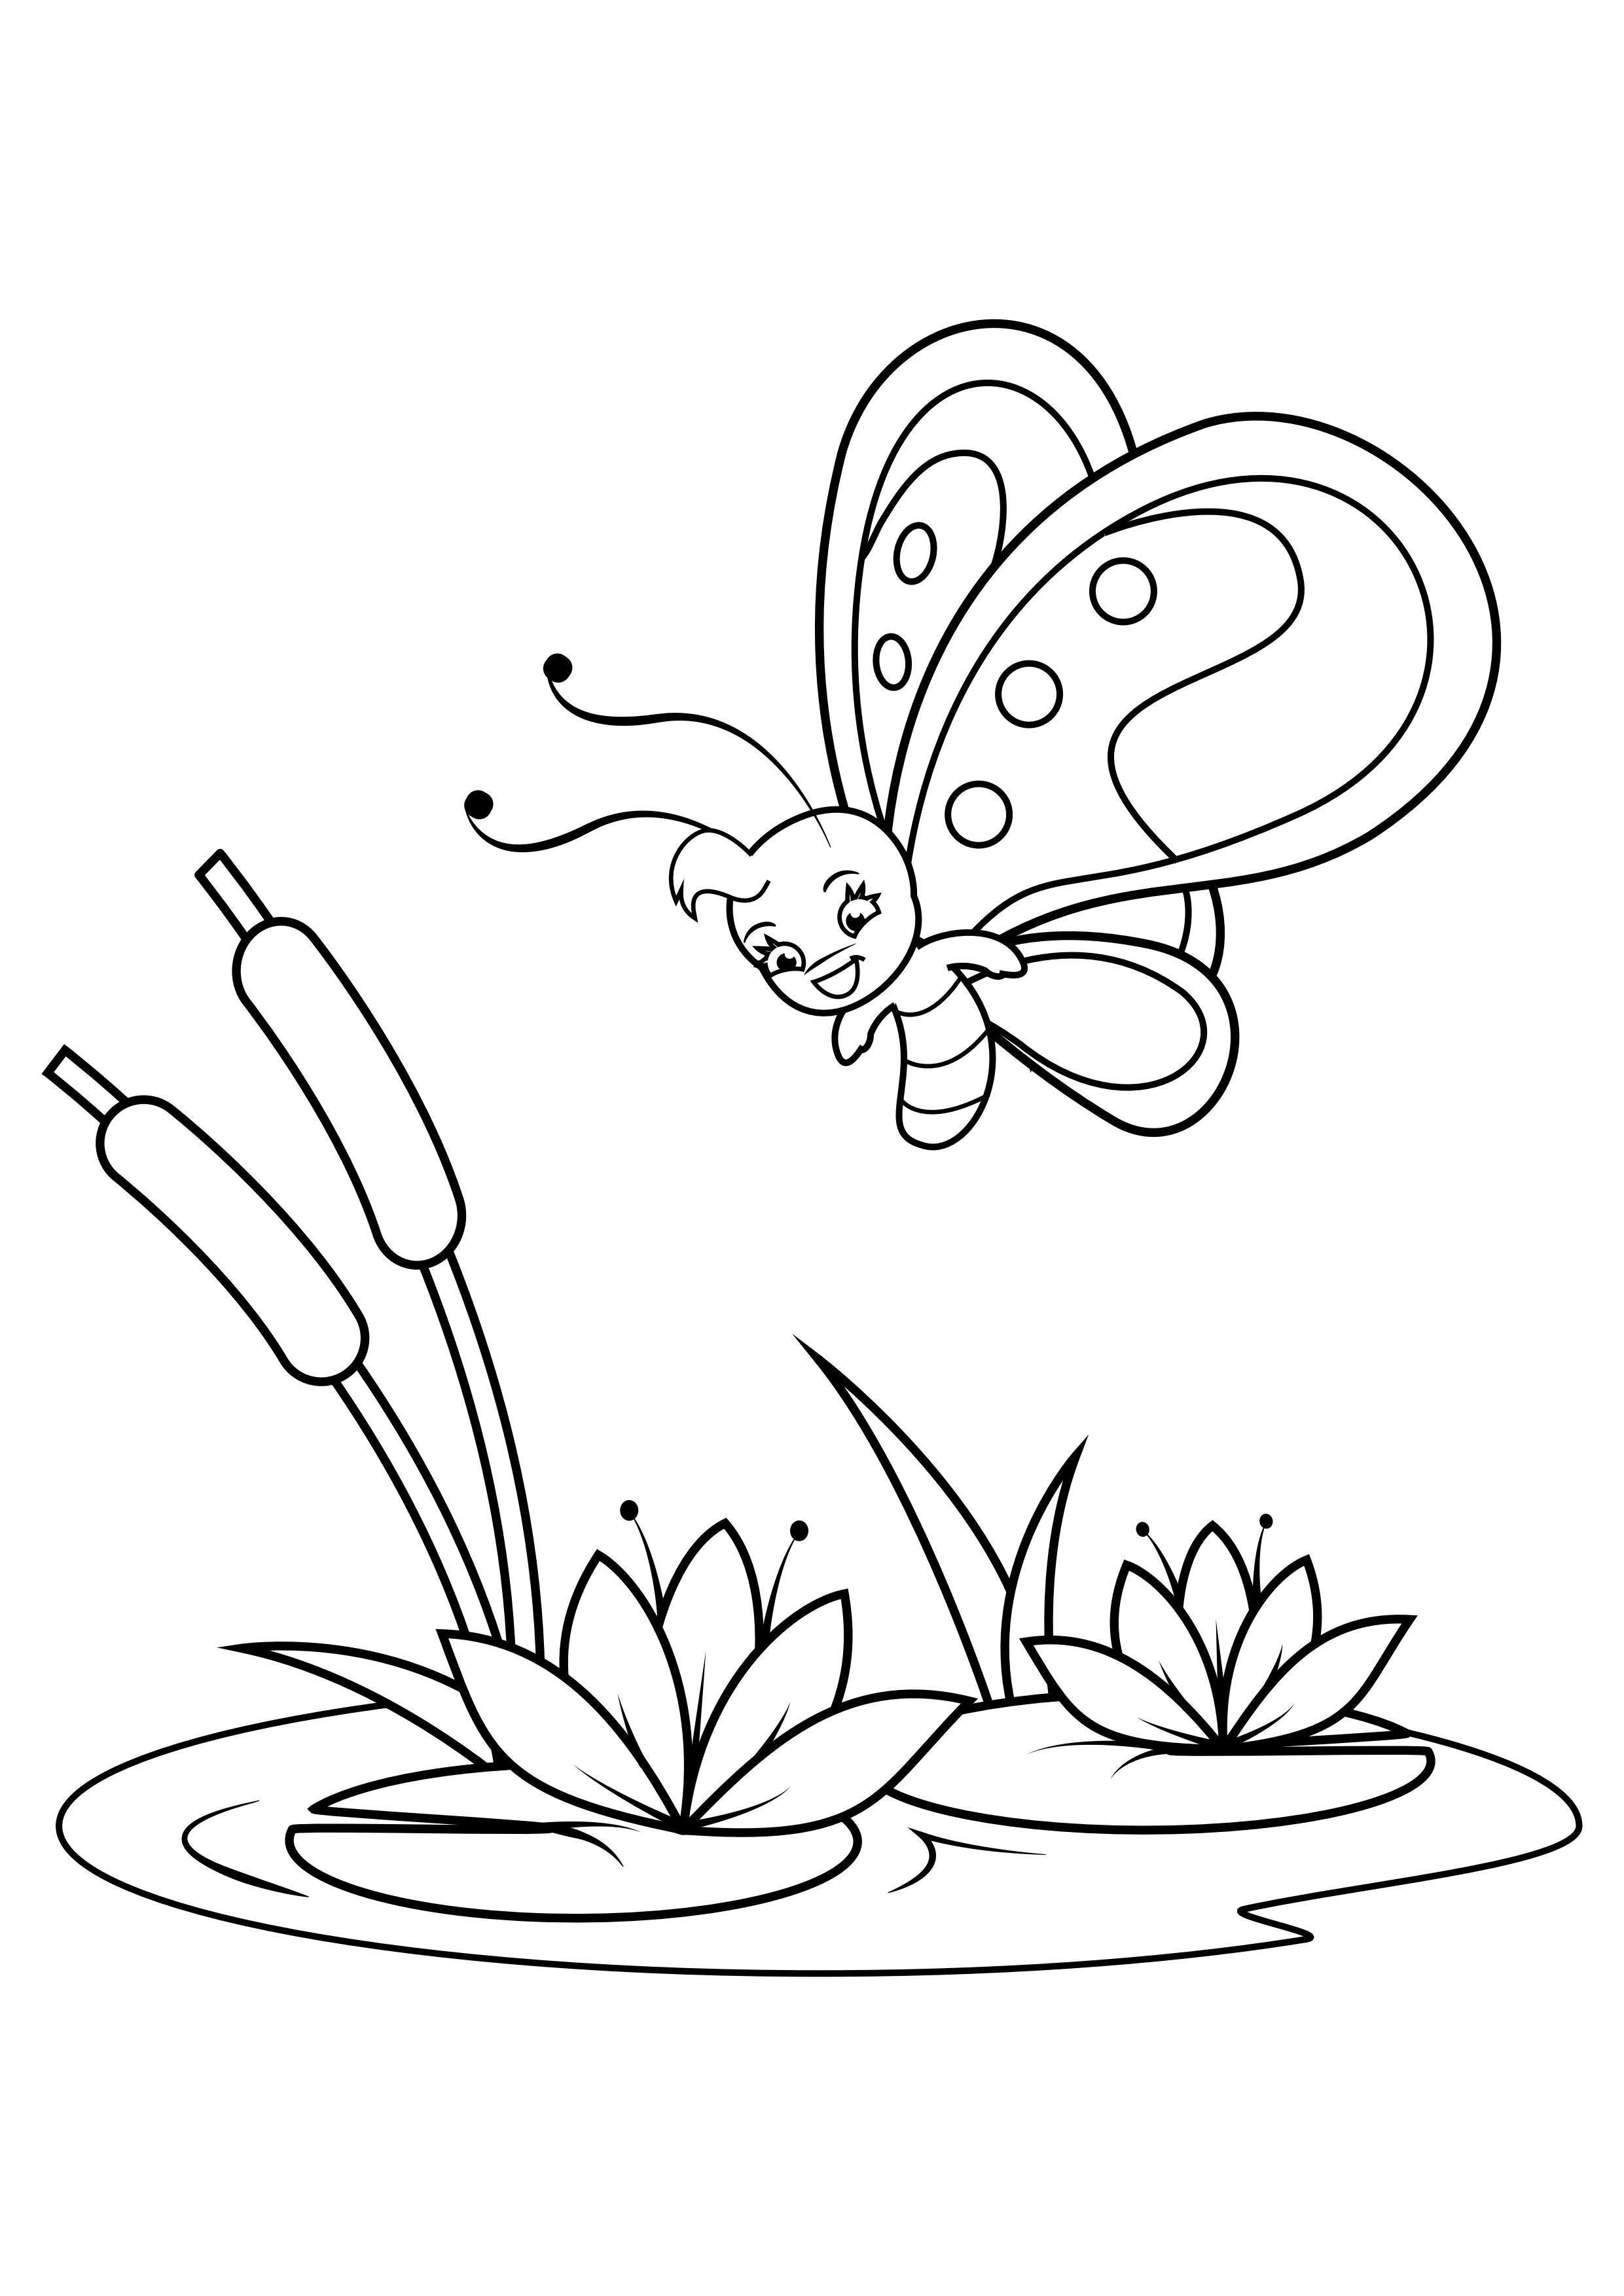 Dibujo para colorear mariposa sobre lirios de agua